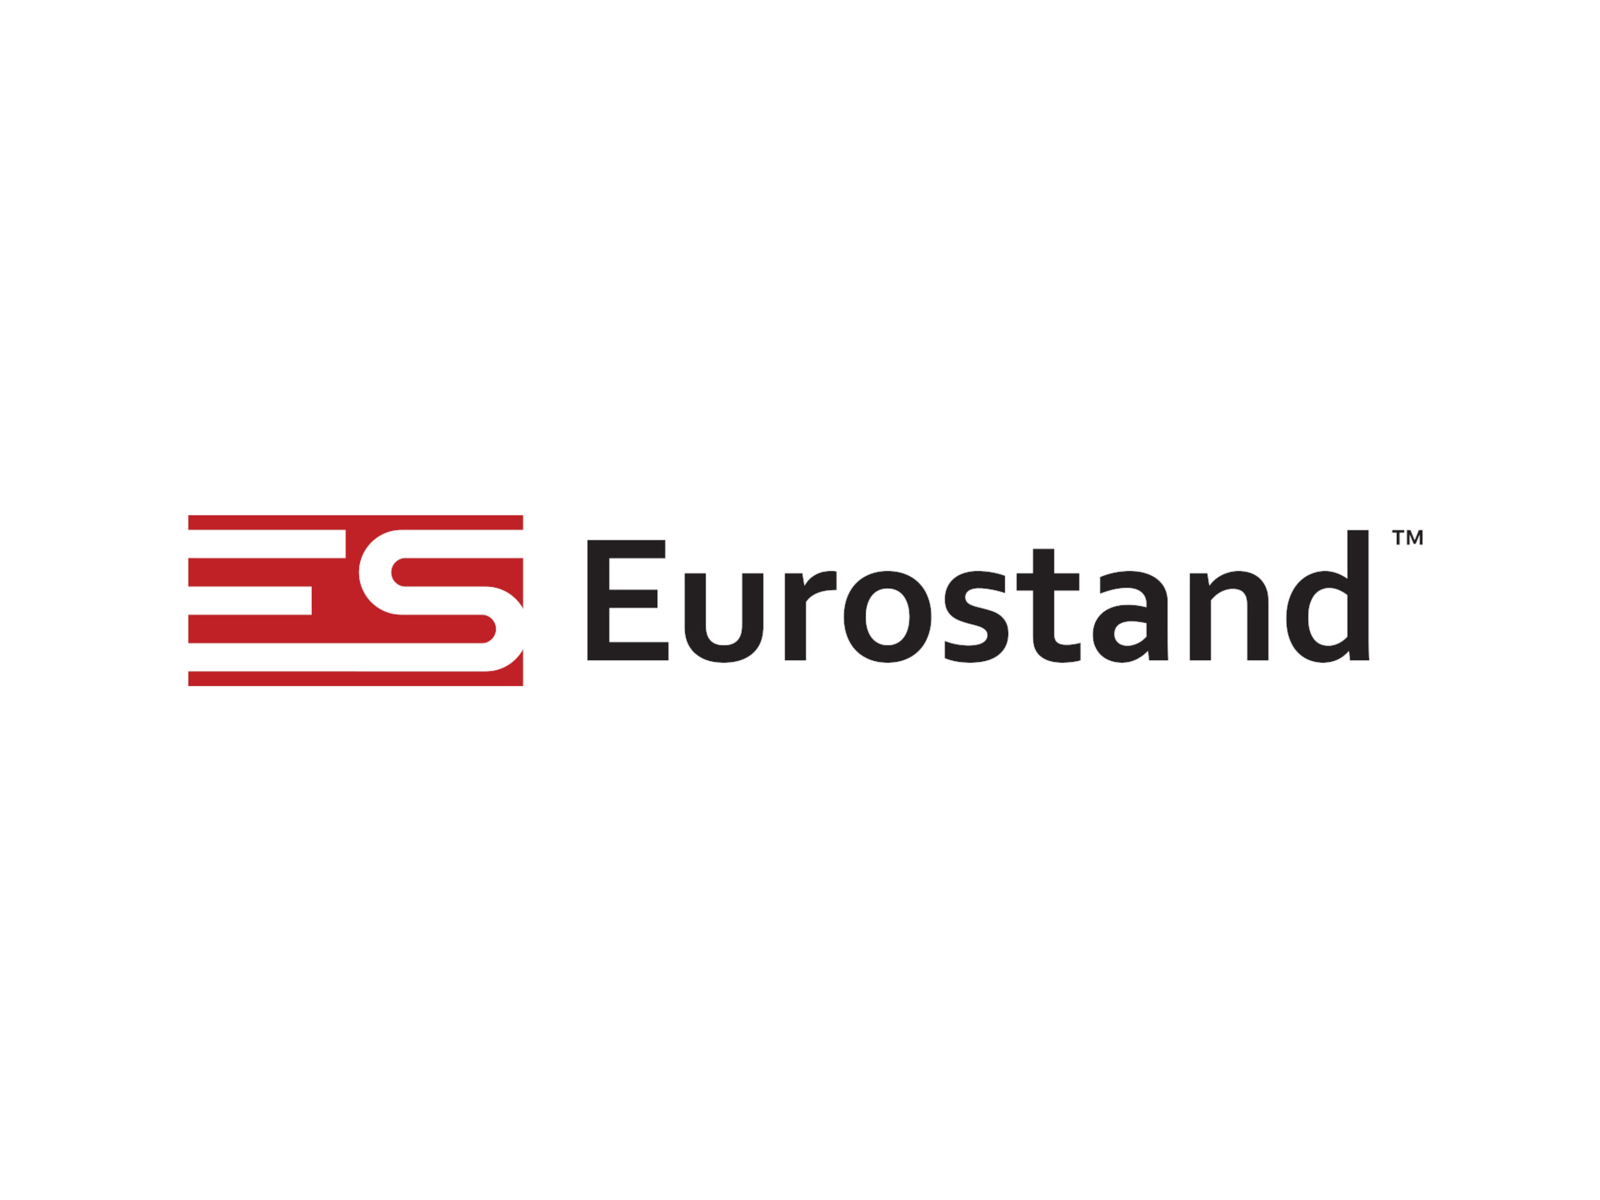 𝕰𝖚𝖗𝖔𝕾𝖙𝖆𝖓𝖈𝖊 – EuroStance